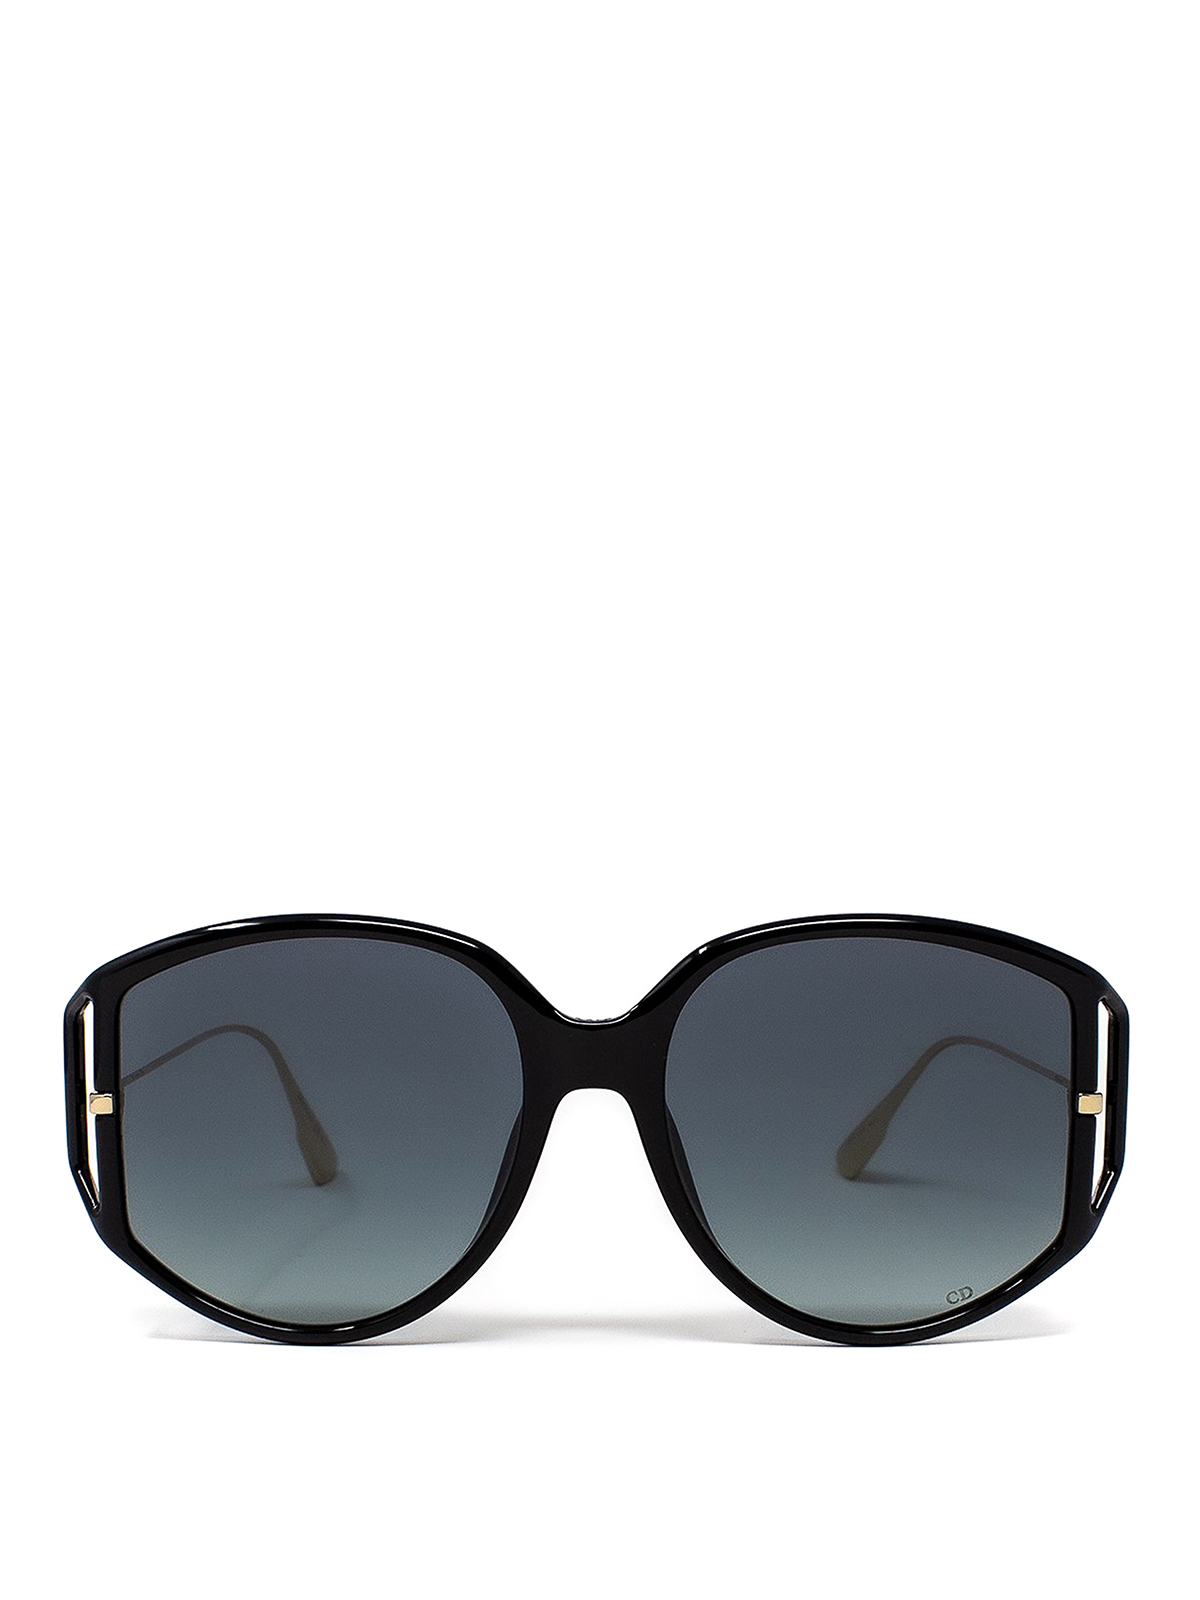 Dior Signature B4I Square Sunglasses | Fashion Eyewear